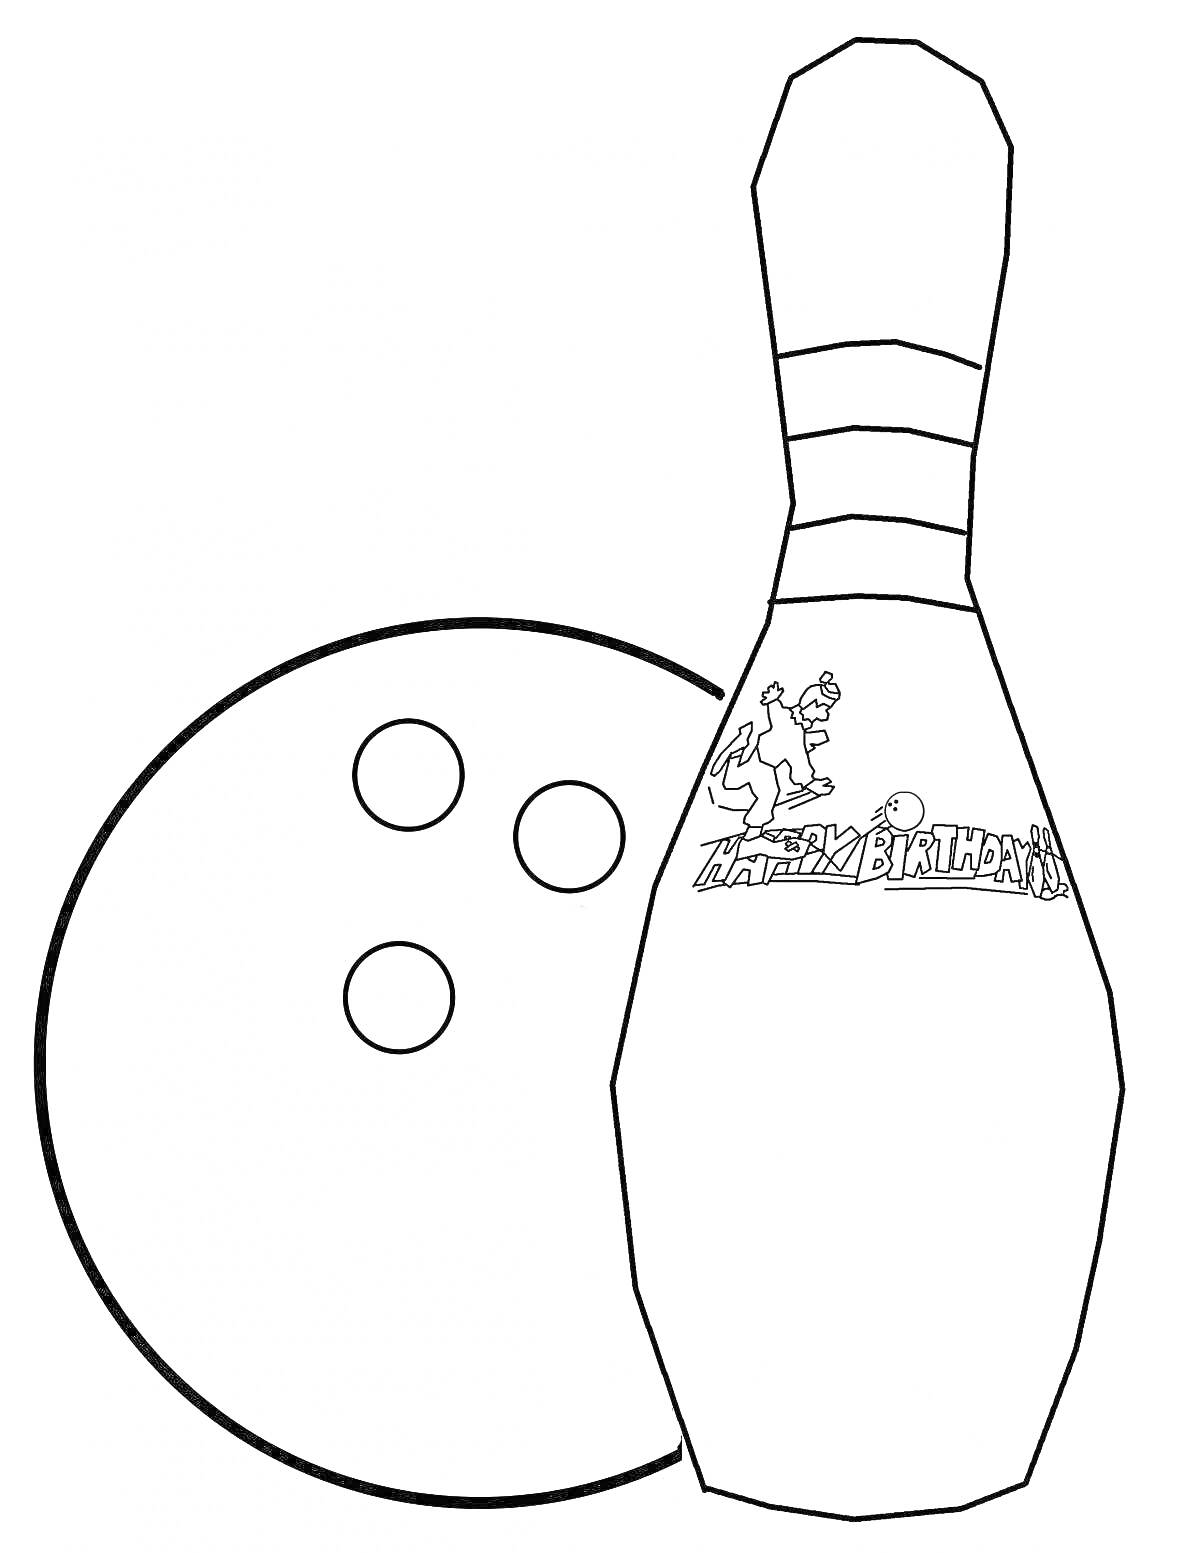 Раскраска Шар и кегля для боулинга с надписью 